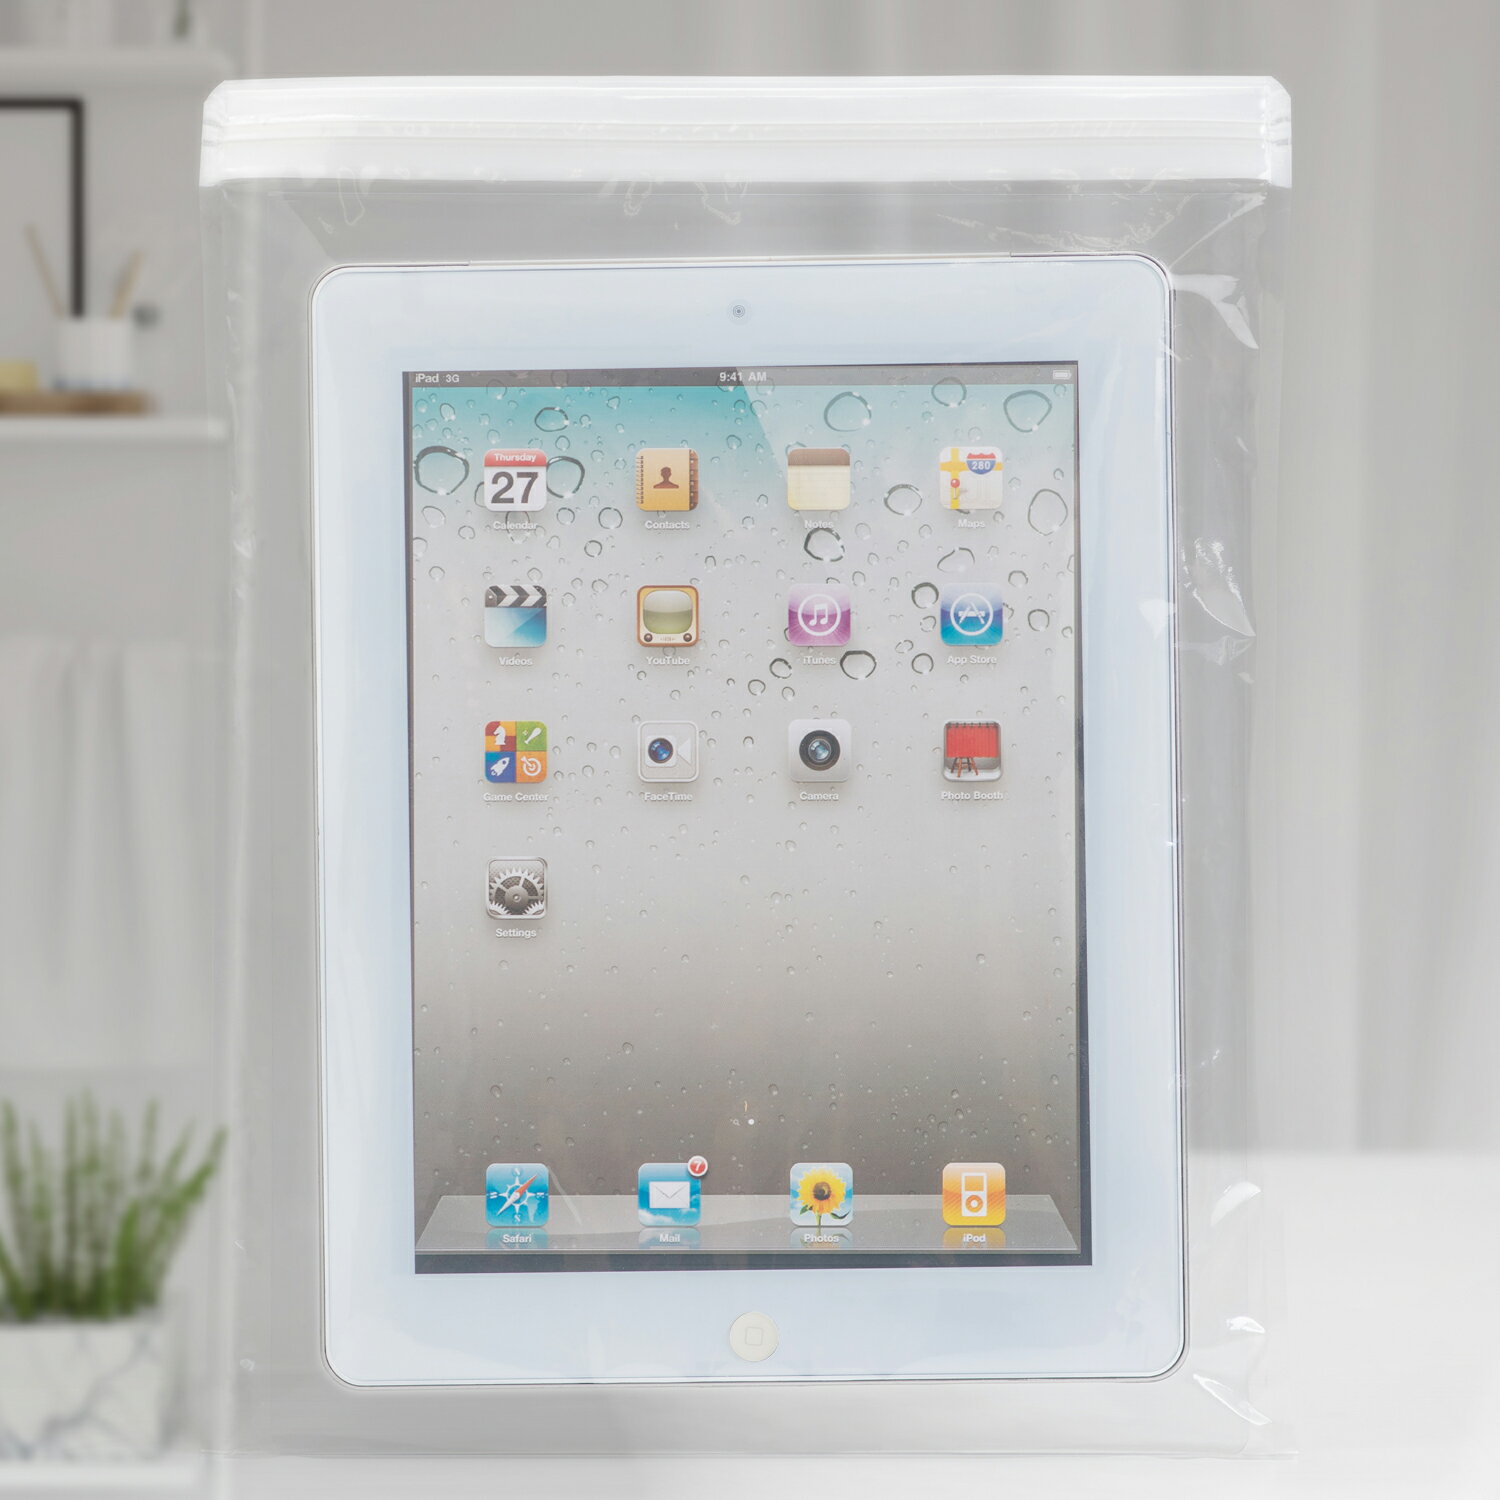 iPad mini用 防水ソフトケース 20枚セット防水・防汚 アルコール消毒・除菌 フィルムごしにタッチパネル操作可能！